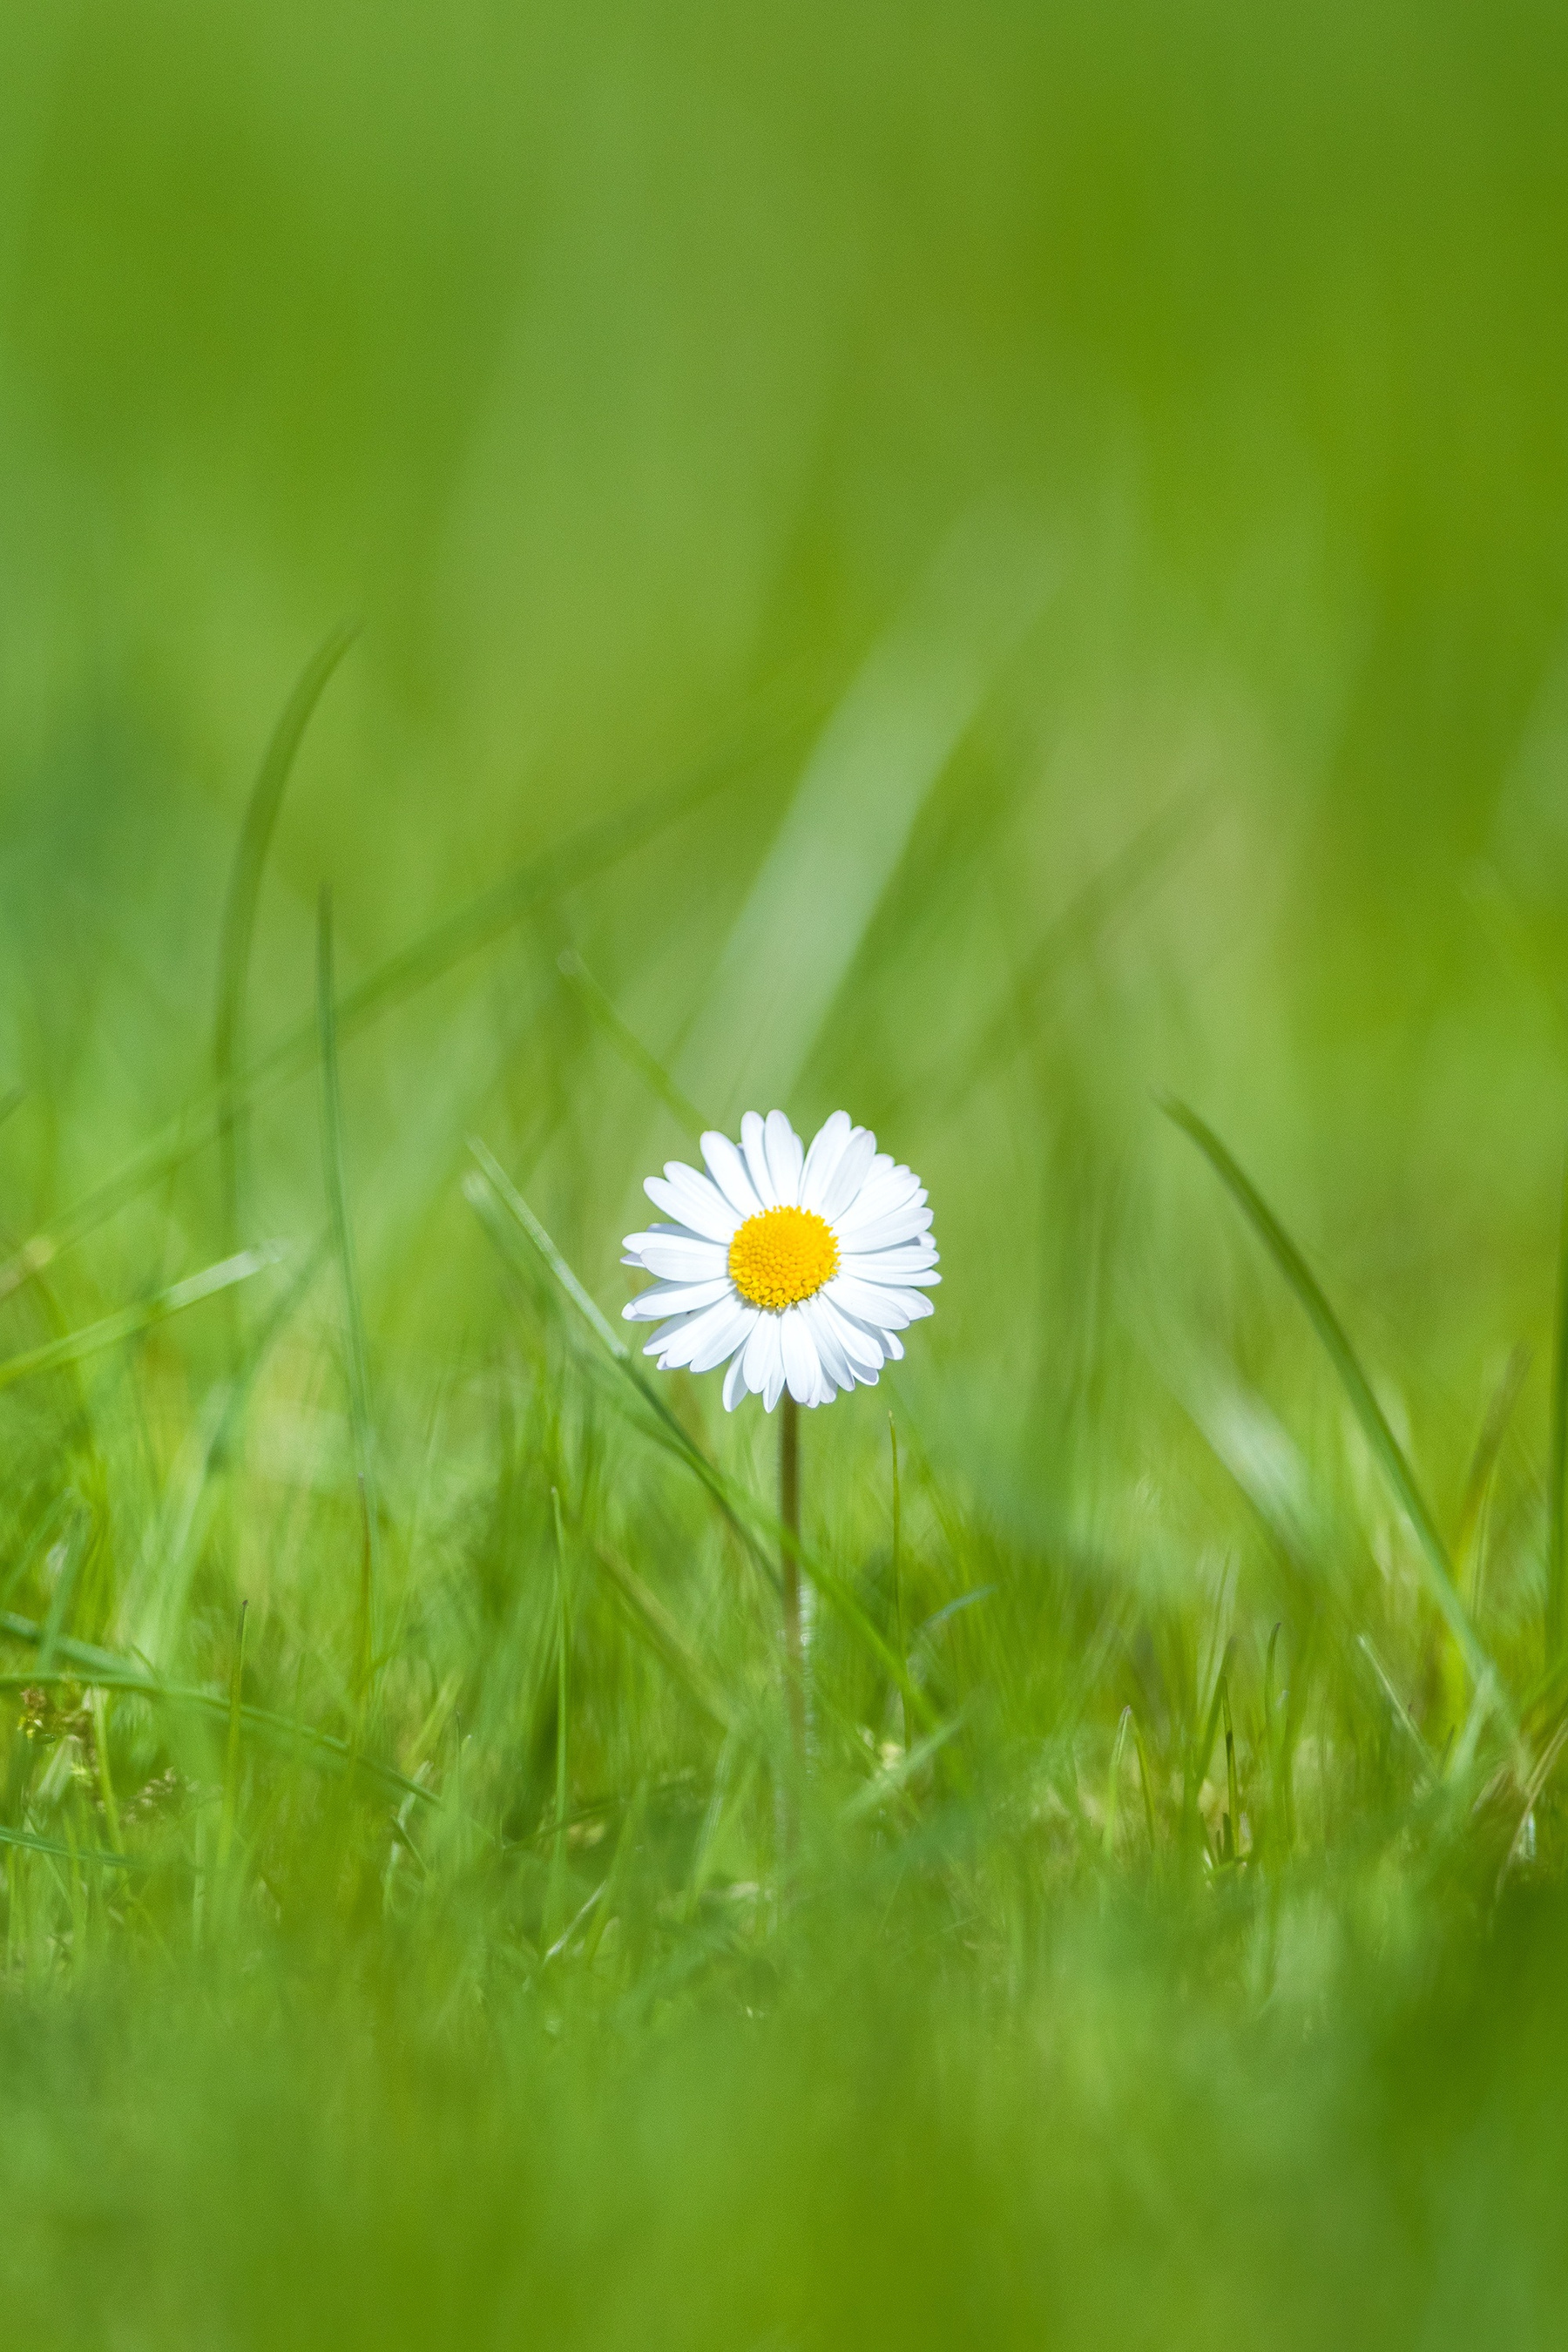 Daisy Flower on Grass